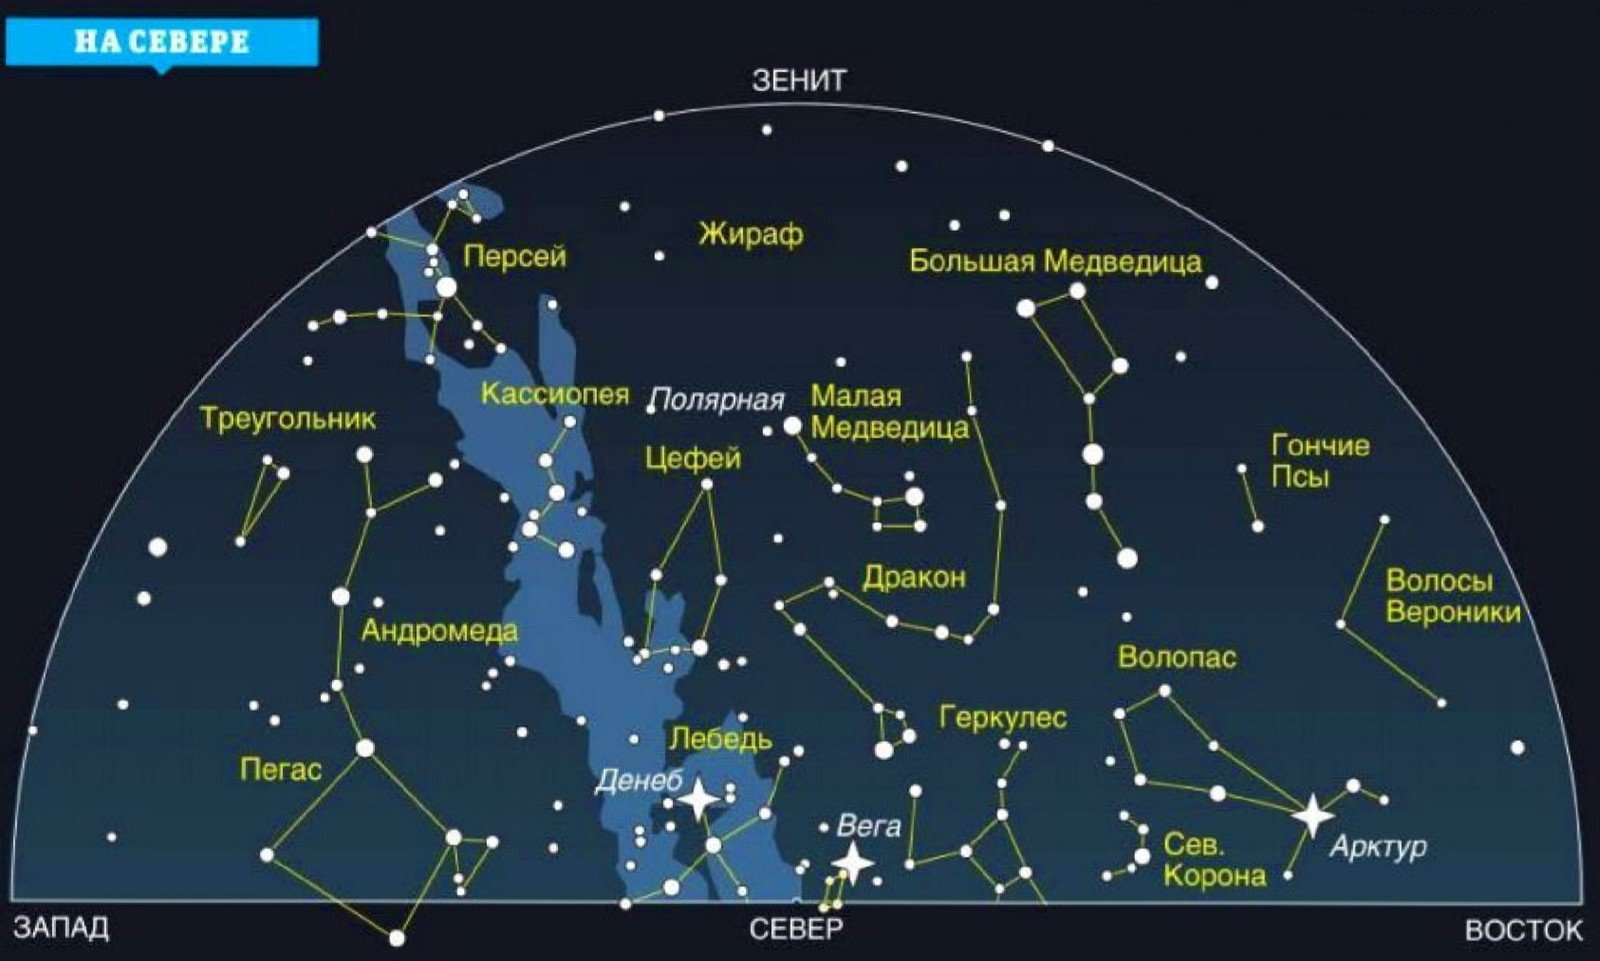 Через какие созвездия проходит млечный путь. Созвездия Галактики Млечный путь. Карта созвездий Млечного пути. Самые известные созвездия. Схемы созвездий и их названия.